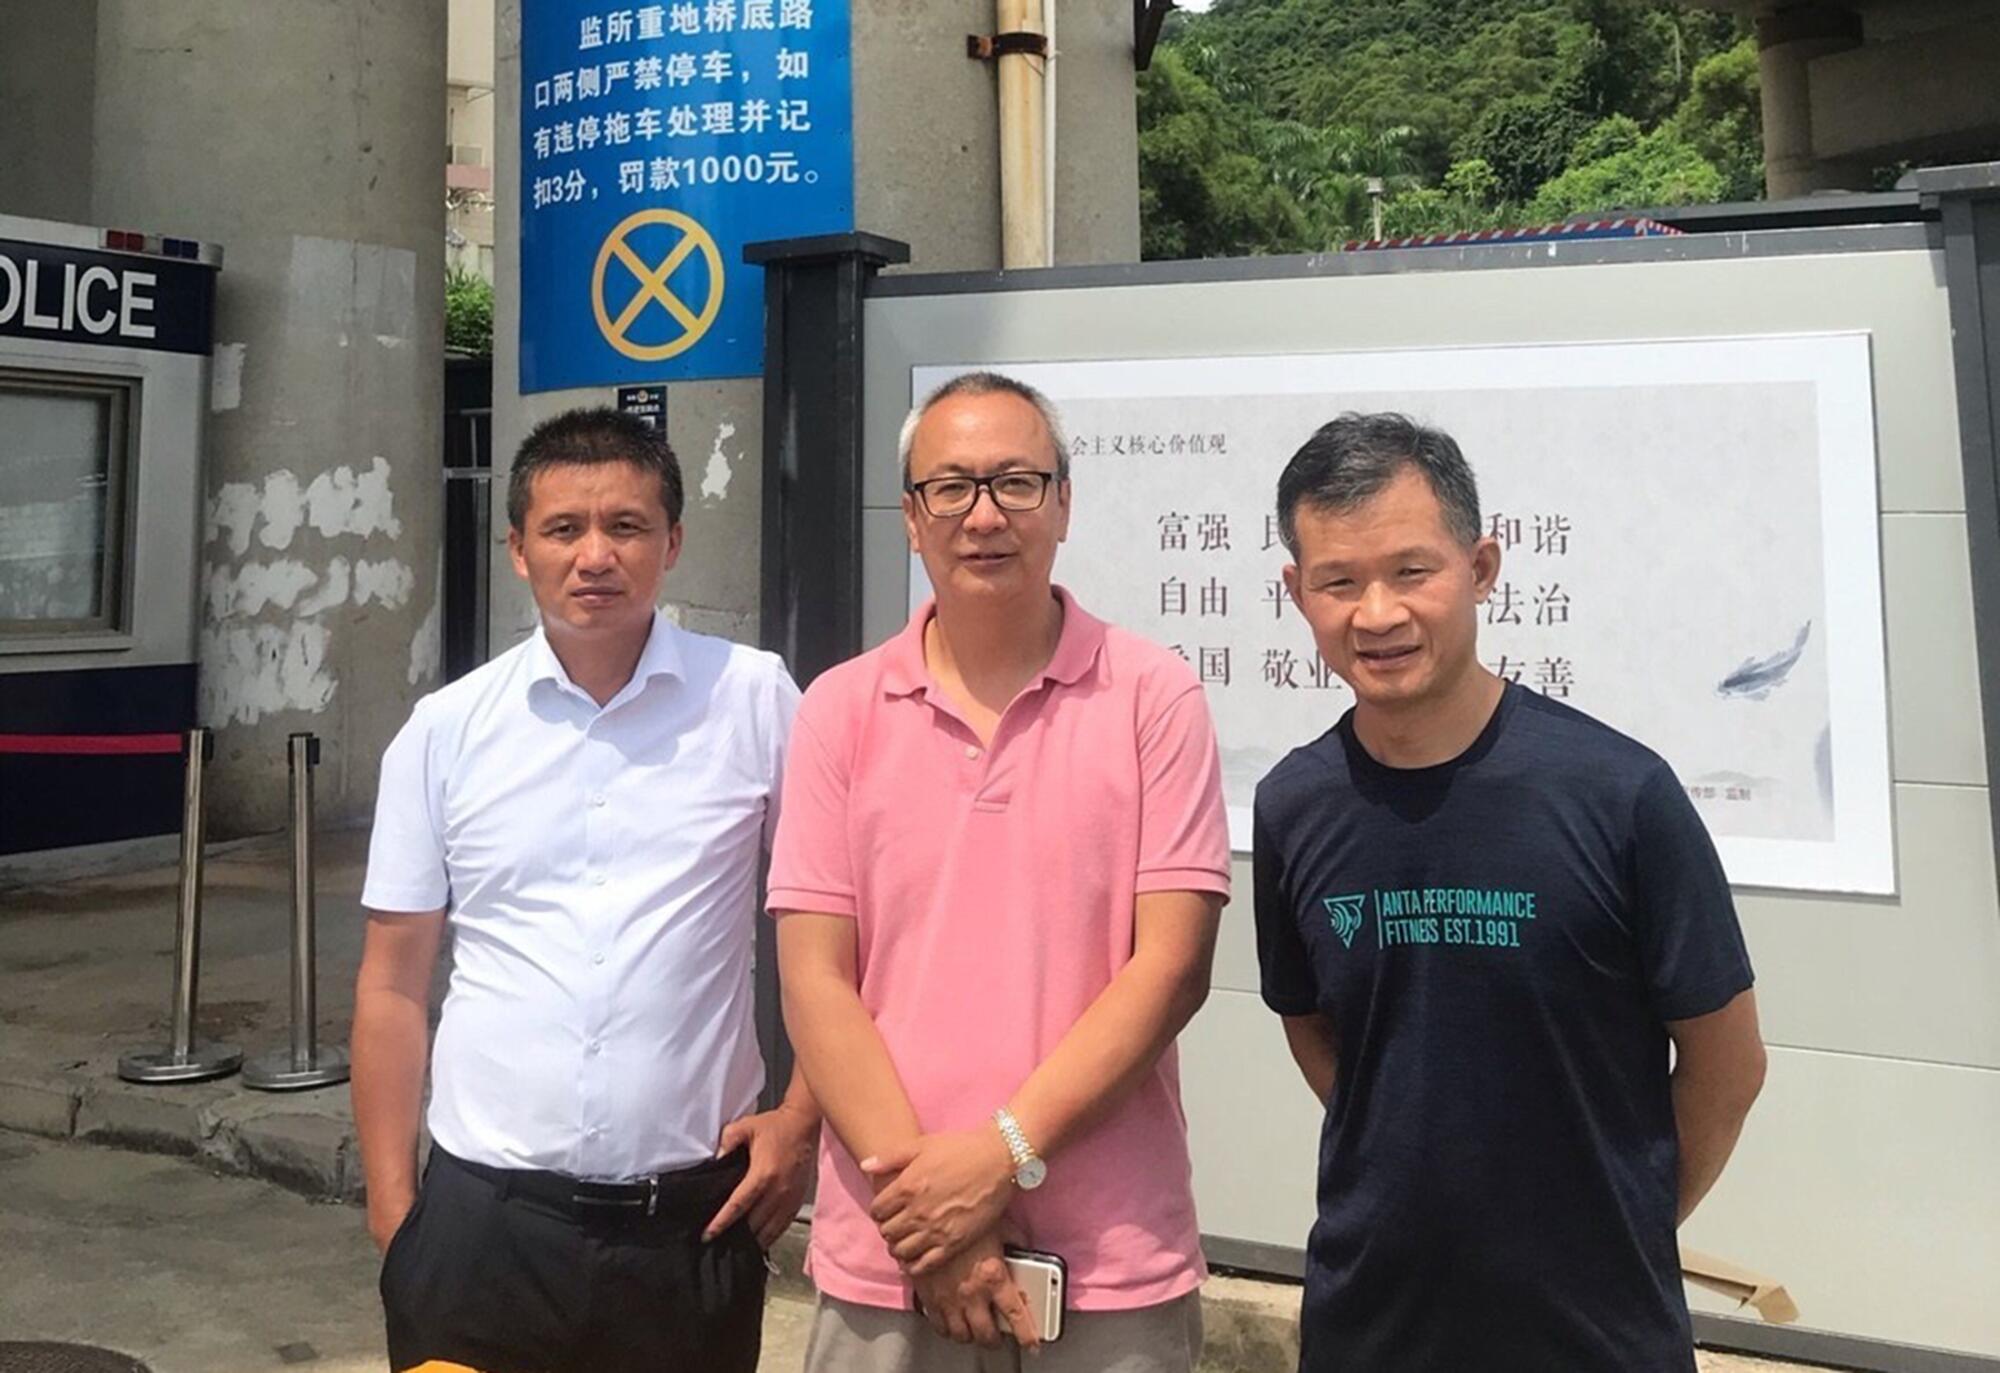 Fan Biaowen, left, Liang Xiaojun and Song Yusheng are human rights lawyers hired by Hong Kong families.